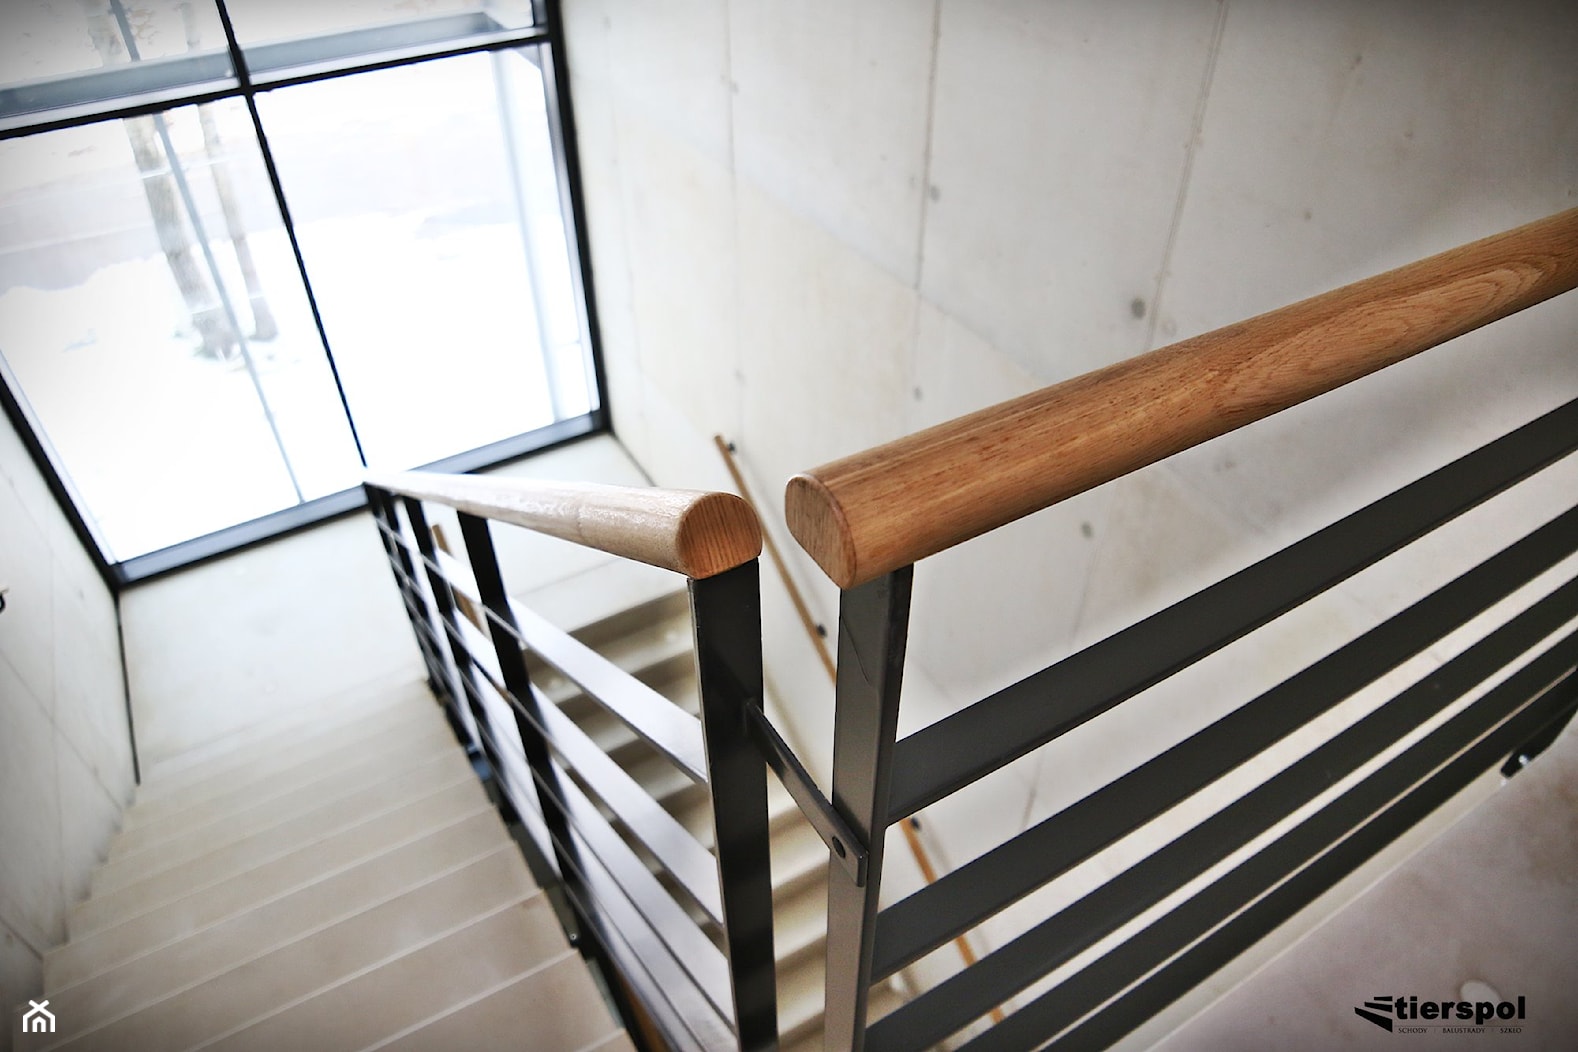 Balustrady z drewnianym pochwytem na klatce schodowej - zdjęcie od Tierspol producent schodów szklanych i całoszklanych - Homebook